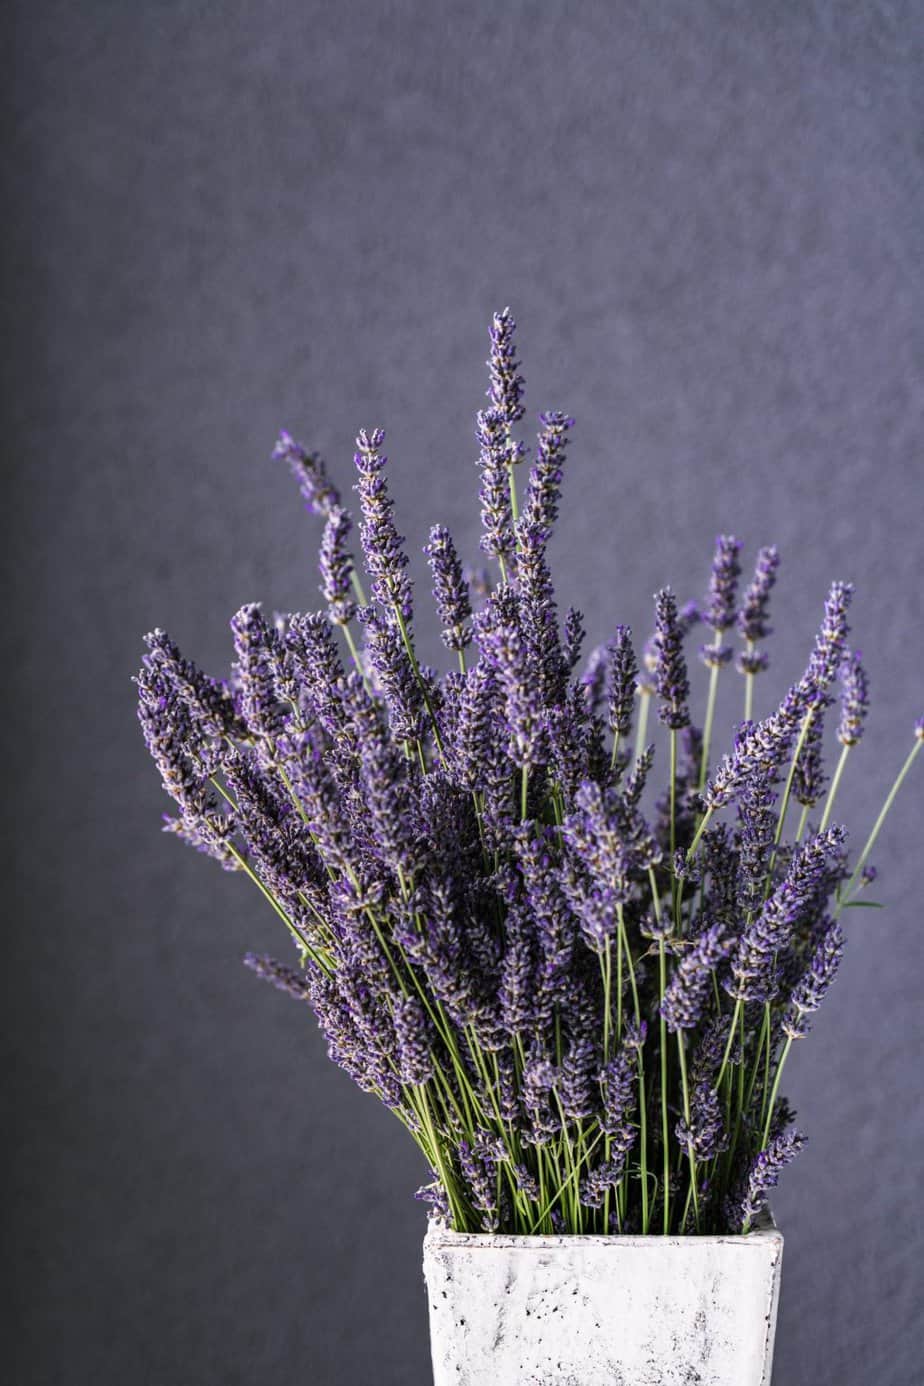 Lavender in a white vase